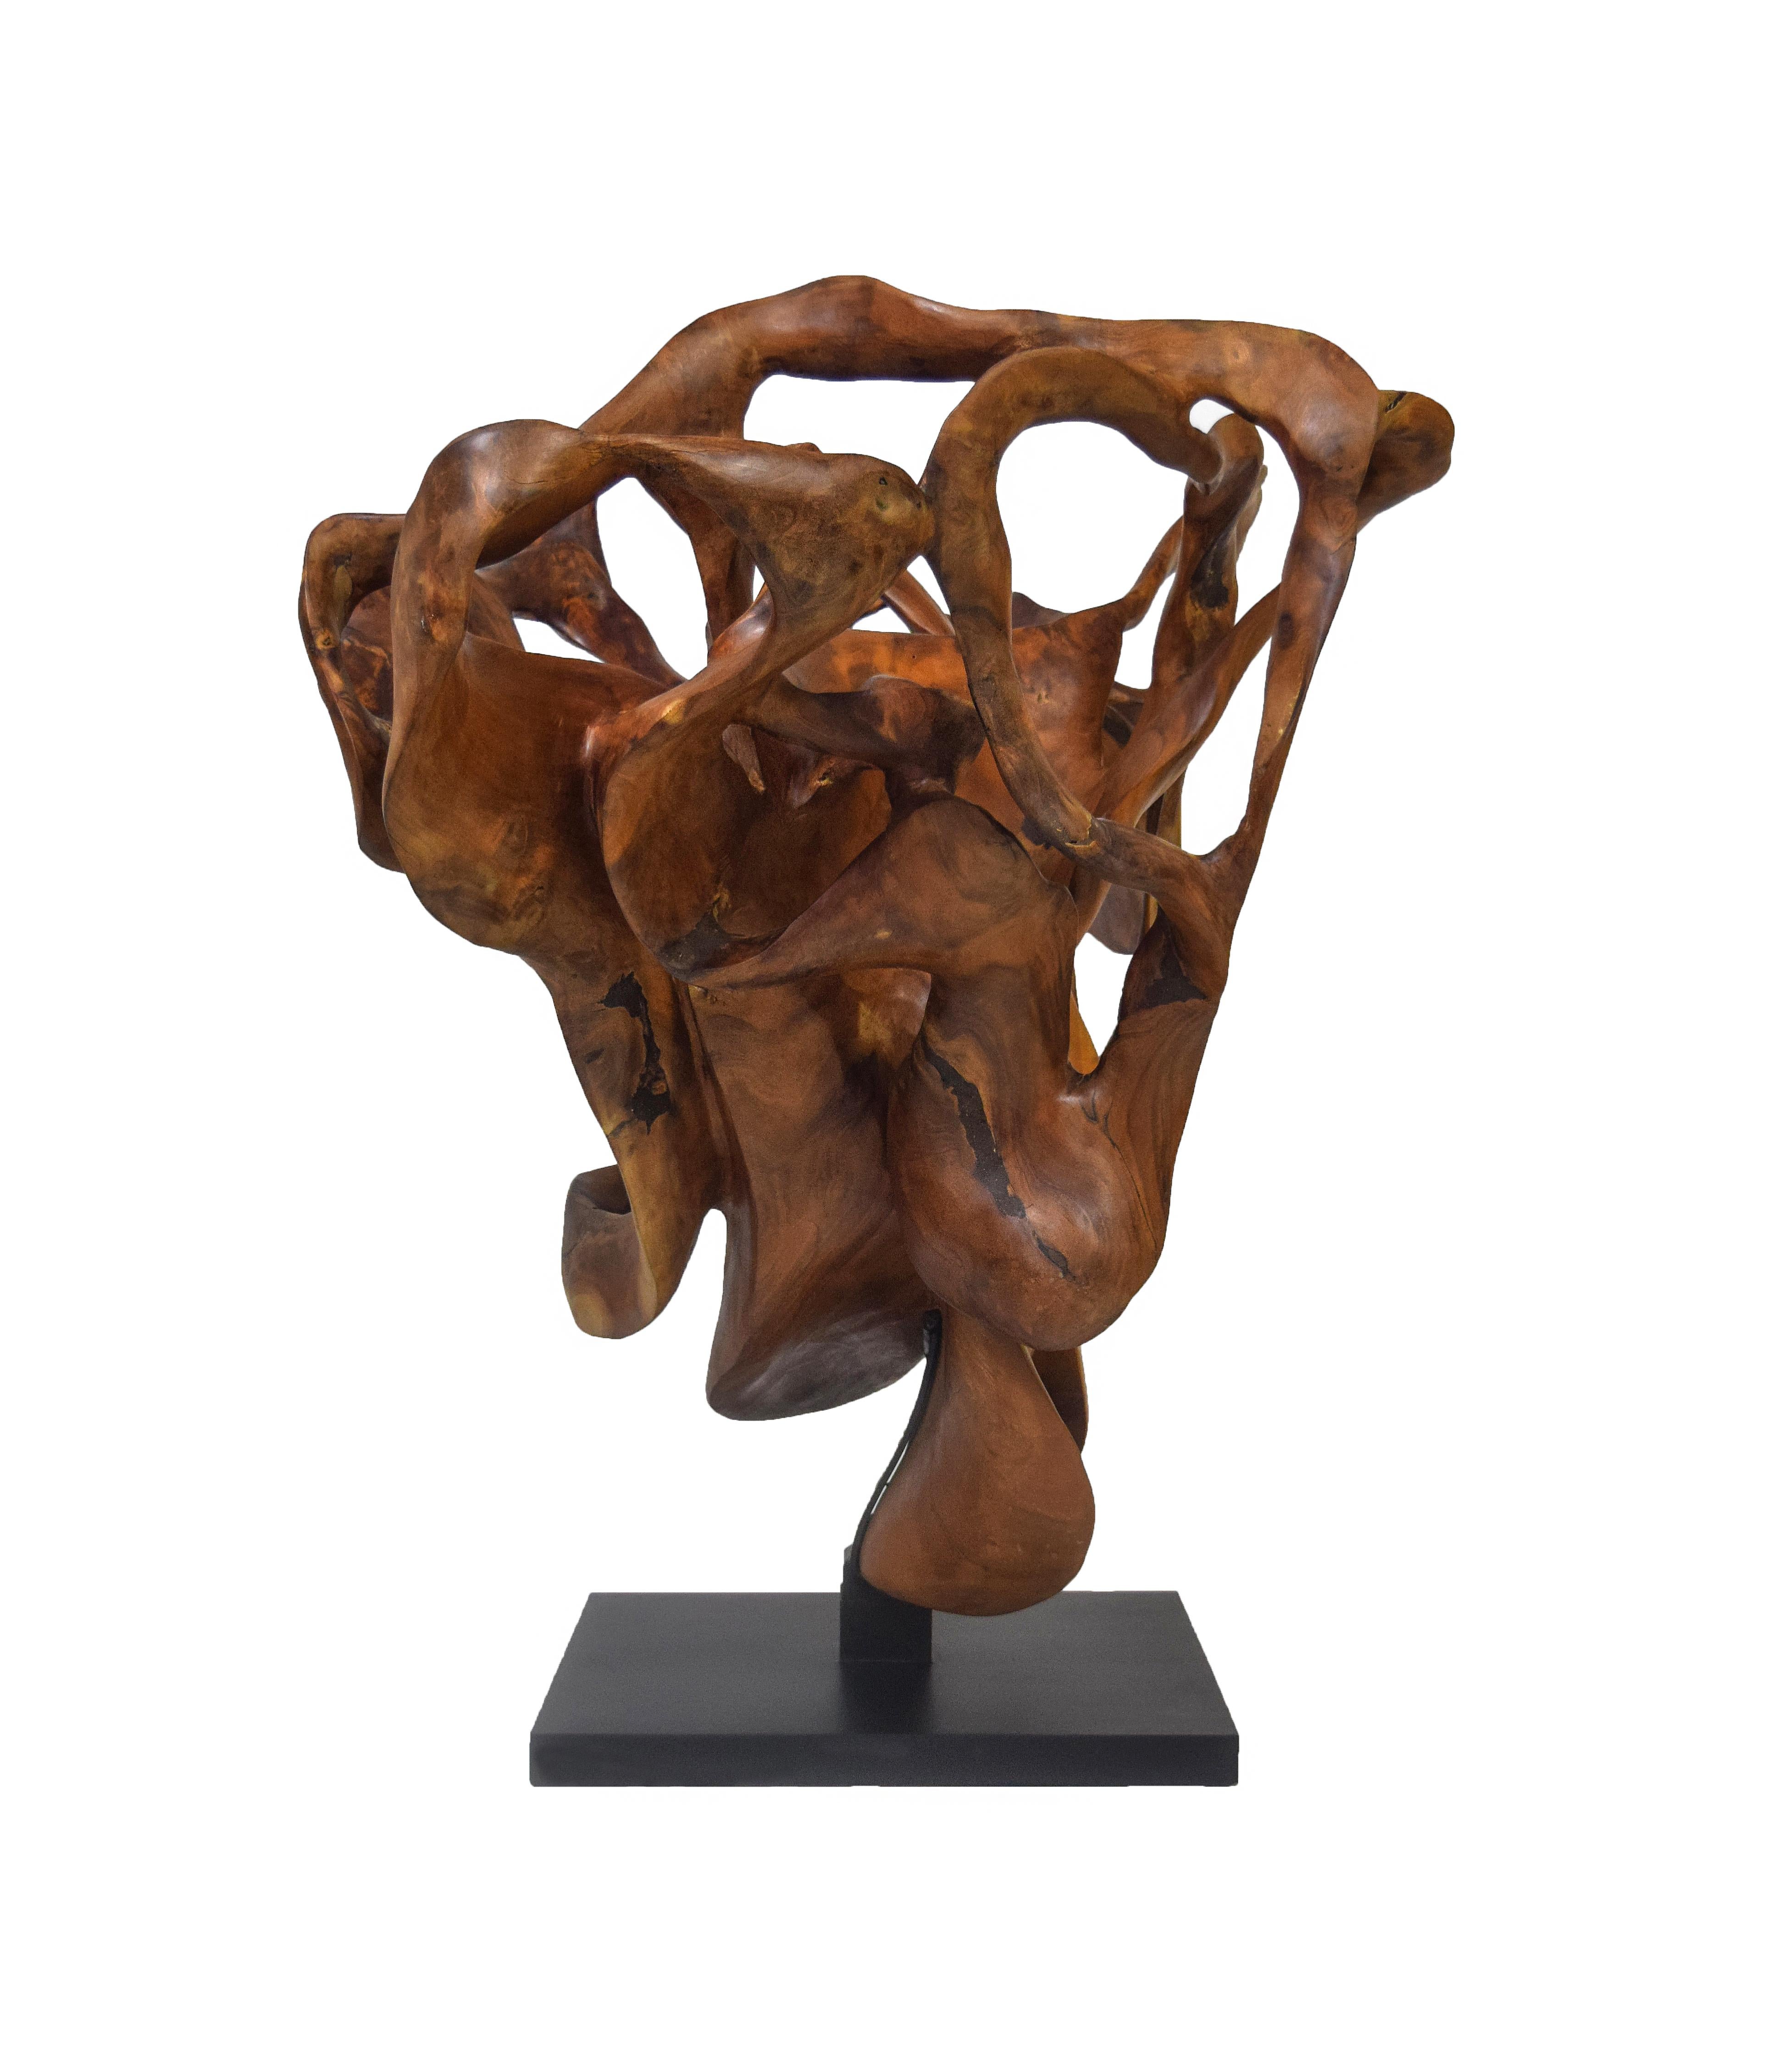 Racines d'acajou

L'Alliance pour la sculpture de Joaquim Ingravidesa est formée par un groupe international de sculpteurs et de designers qui collaborent pour créer des sculptures abstraites inspirées par la nature. Ils travaillent souvent ensemble